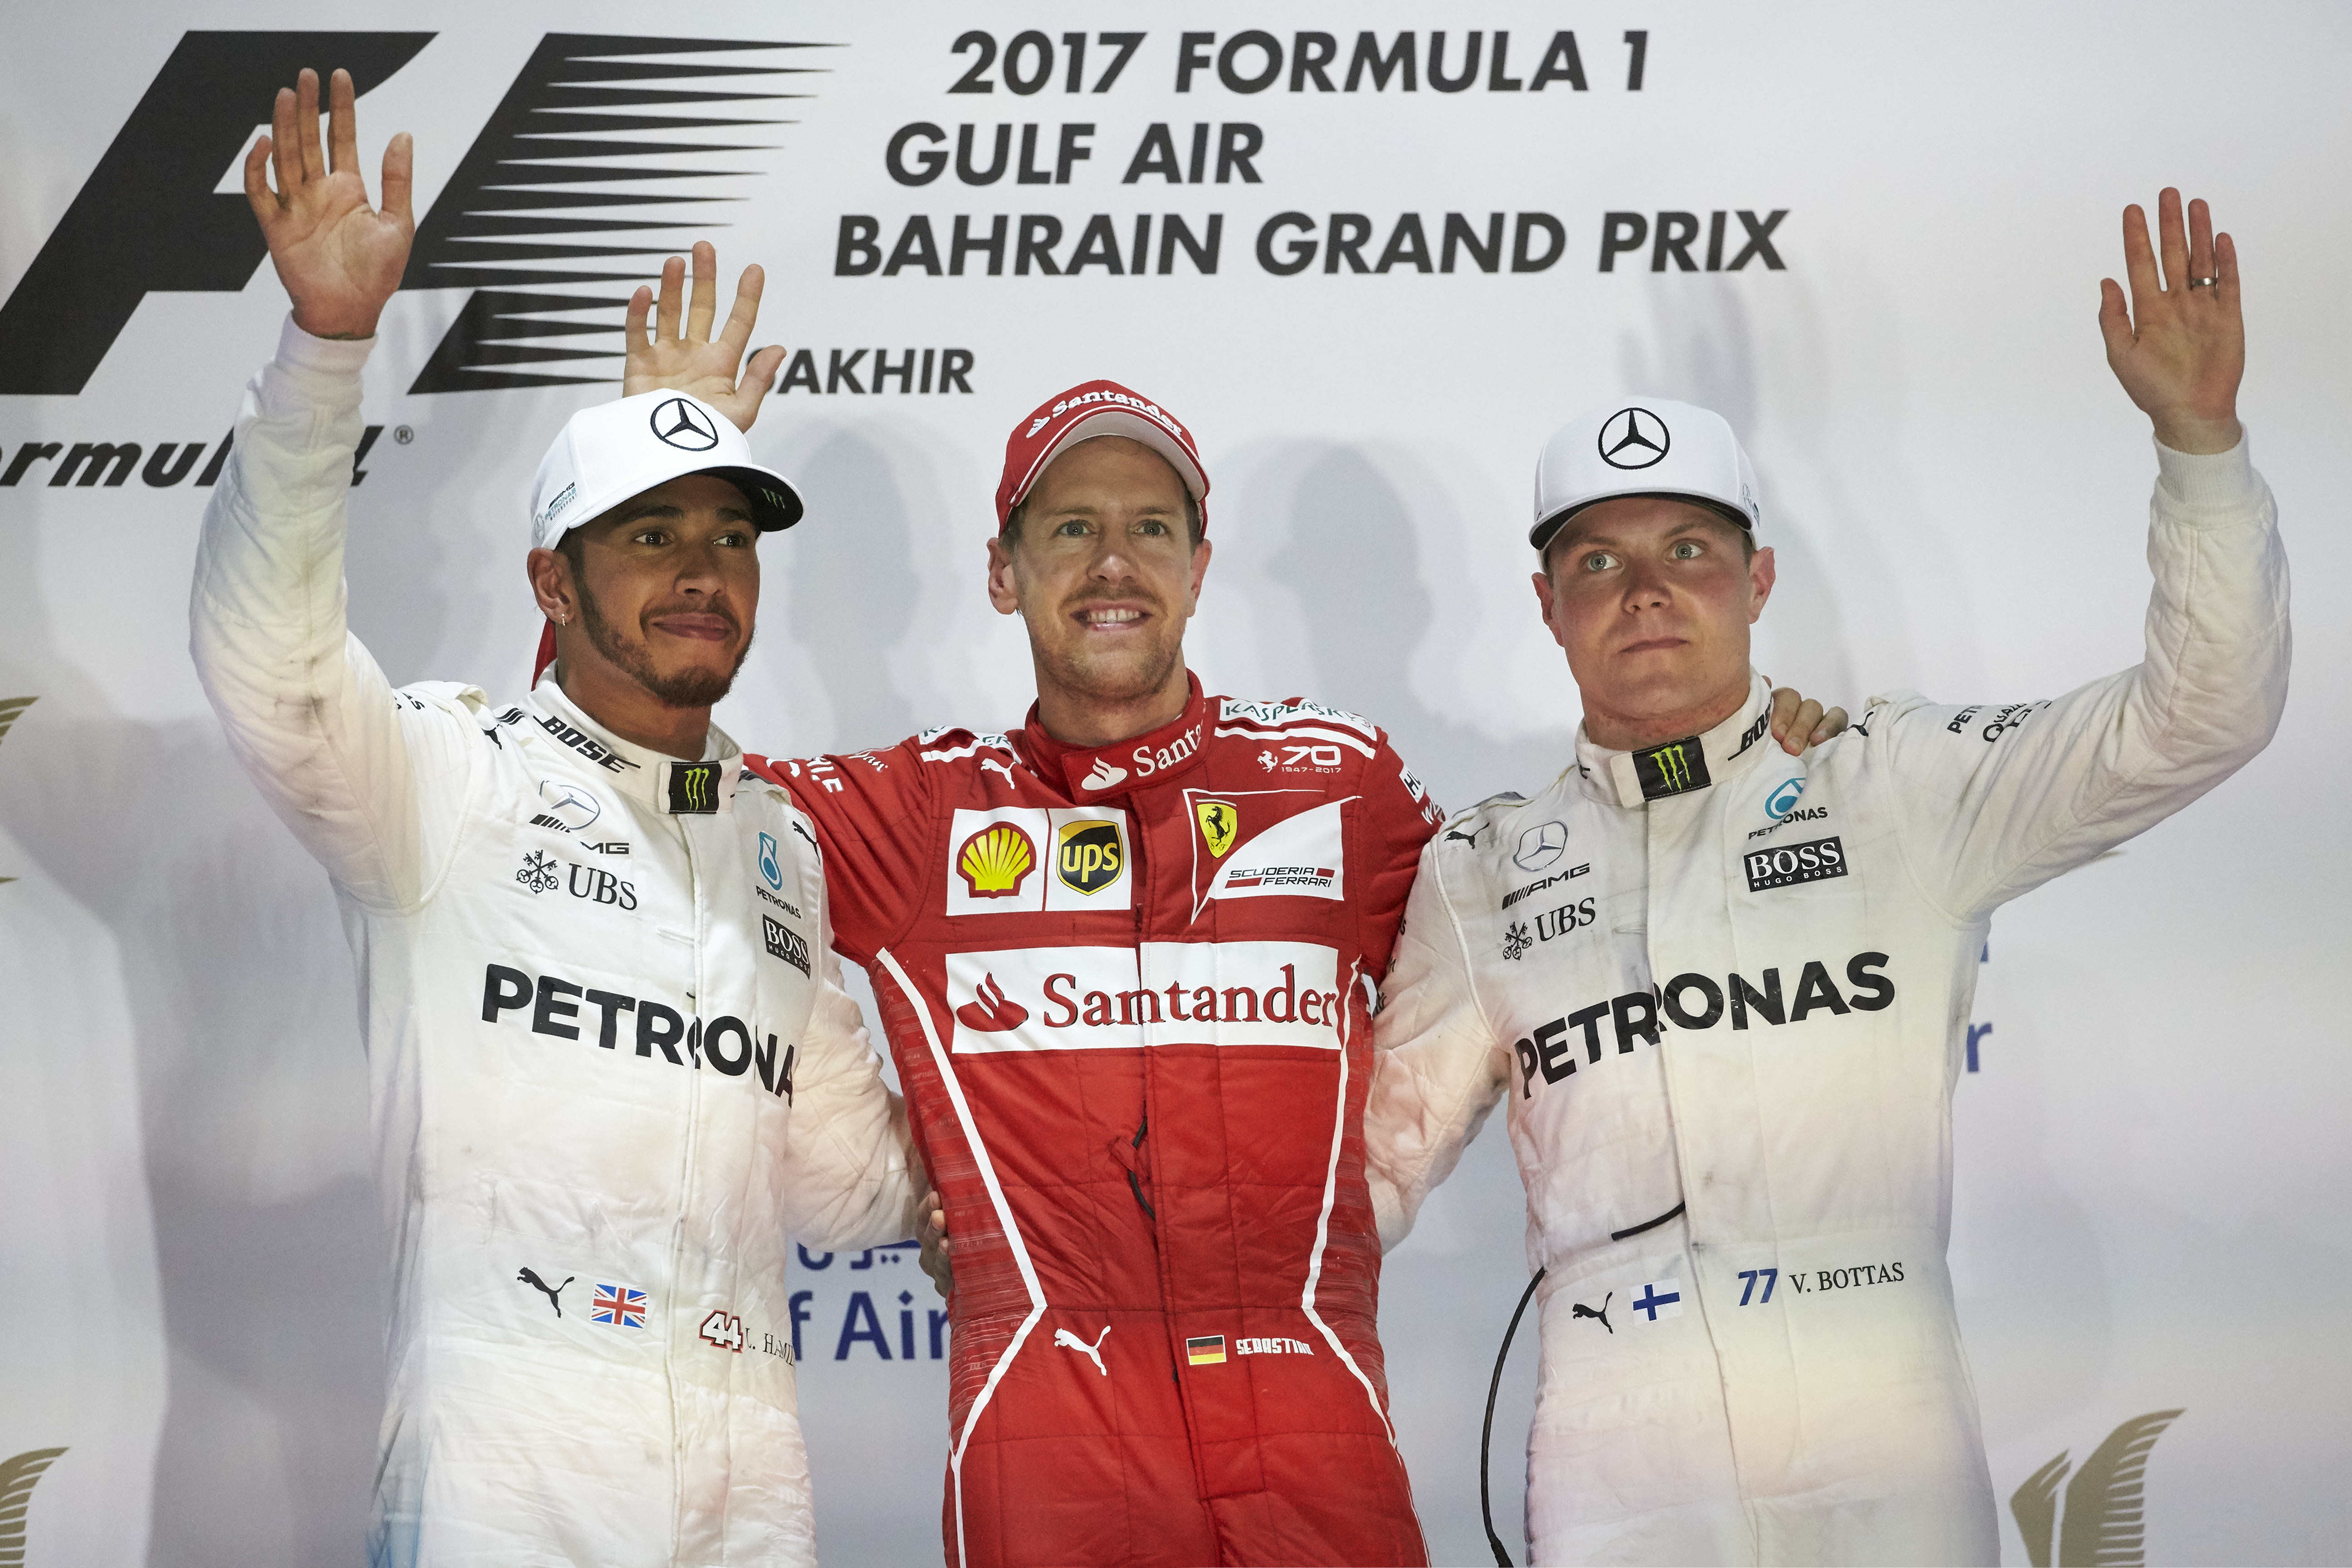 Formel 1 - Mercedes-AMG Petronas Motorsport, Großer Preis von Bahrain 2017. Lewis Hamilton, Valtteri Bottas ;

Formula One - Mercedes-AMG Petronas Motorsport, Bahrain GP 2017. Lewis Hamilton, Valtteri Bottas;